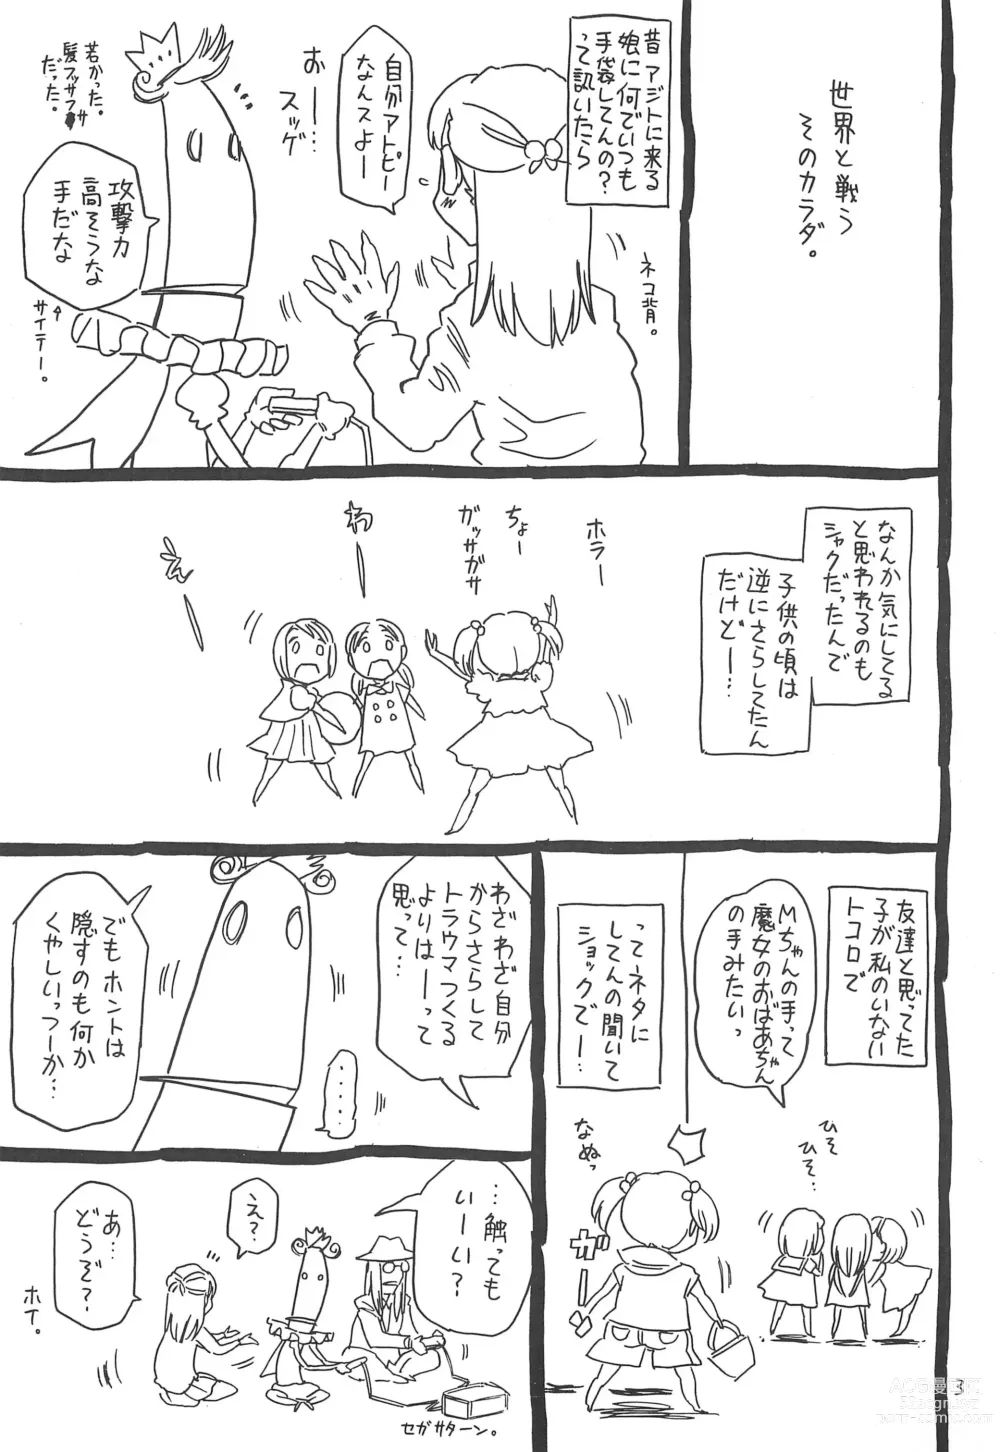 Page 3 of doujinshi Hyakka Shokkou Atopink